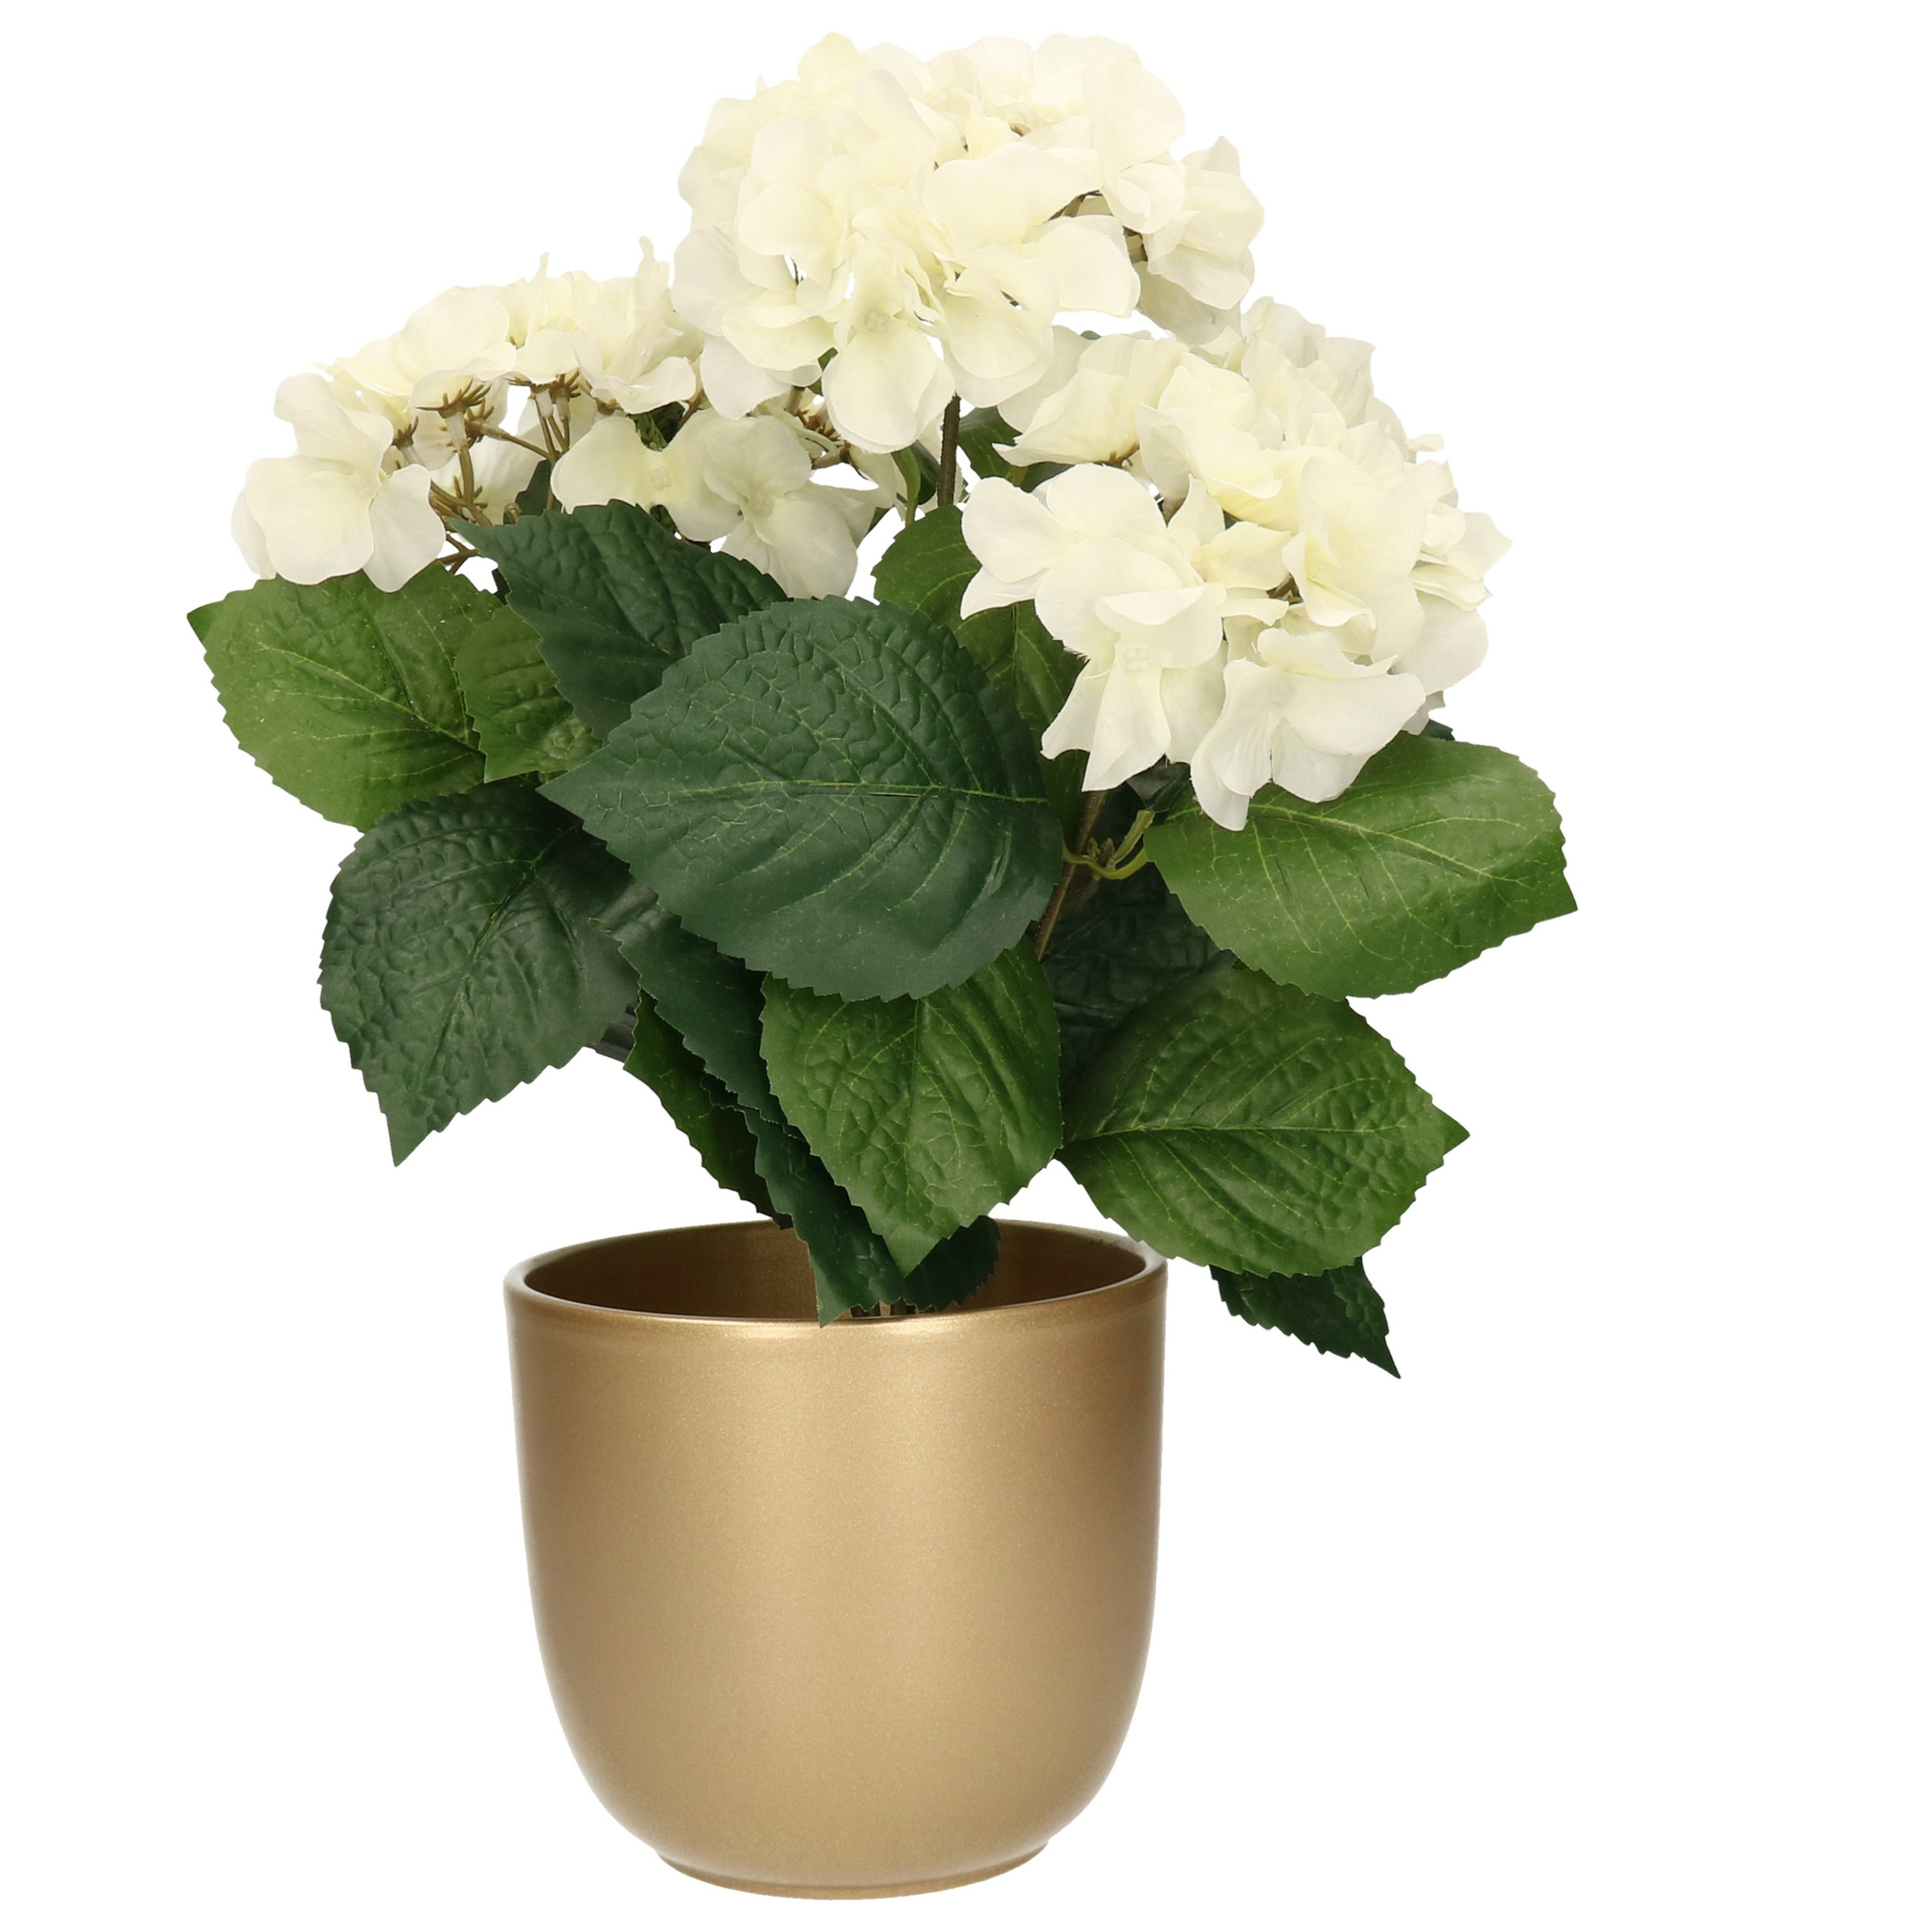 Hortensia kunstplant met bloemen wit in pot goud 40 cm hoog